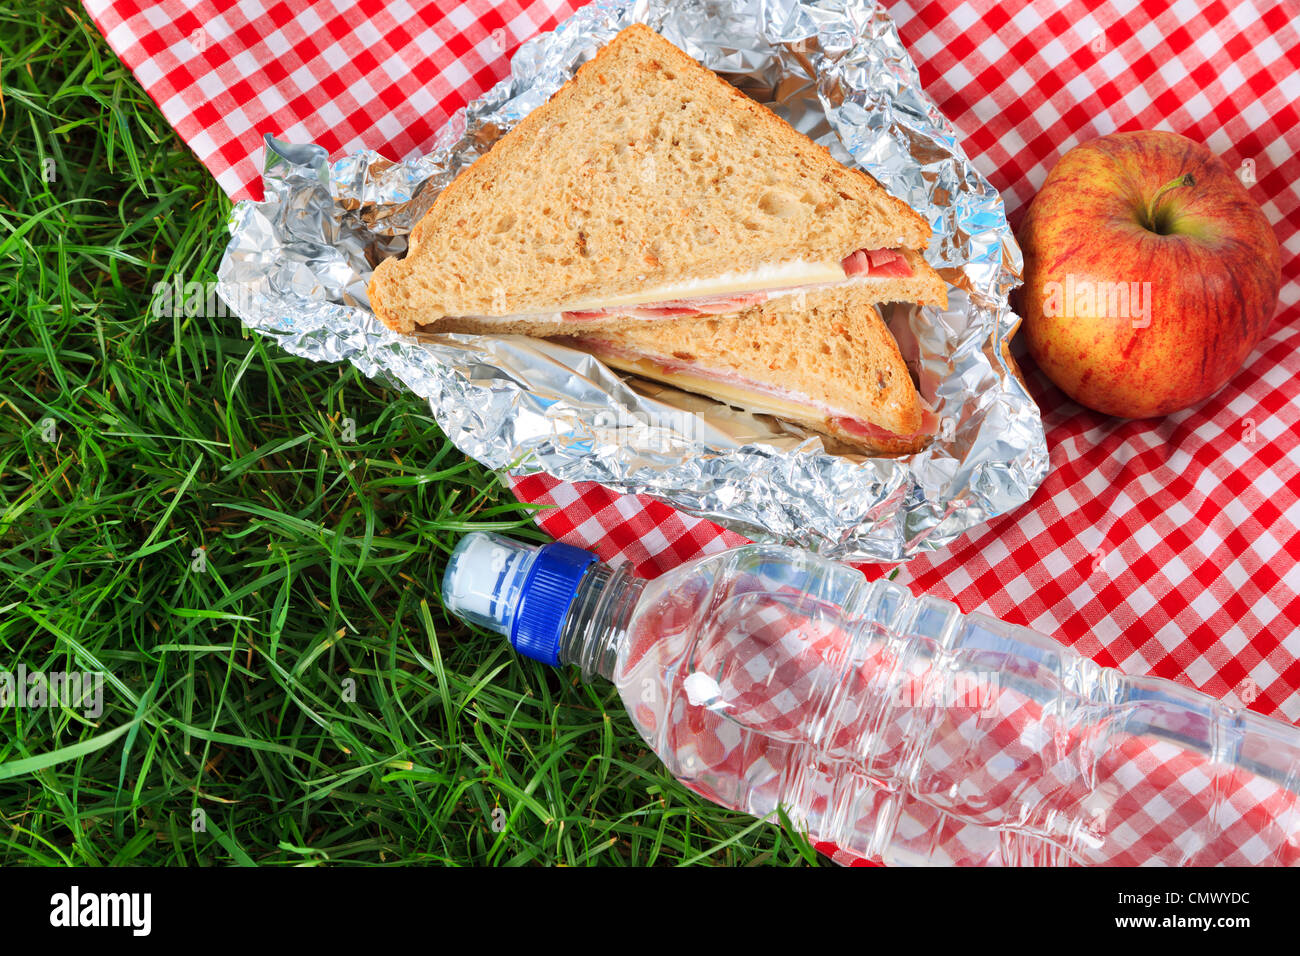 Photo d'un pique-nique composé d'un sandwich, une pomme et une bouteille d'eau minérale toutes sur un chiffon rouge à carreaux. Banque D'Images